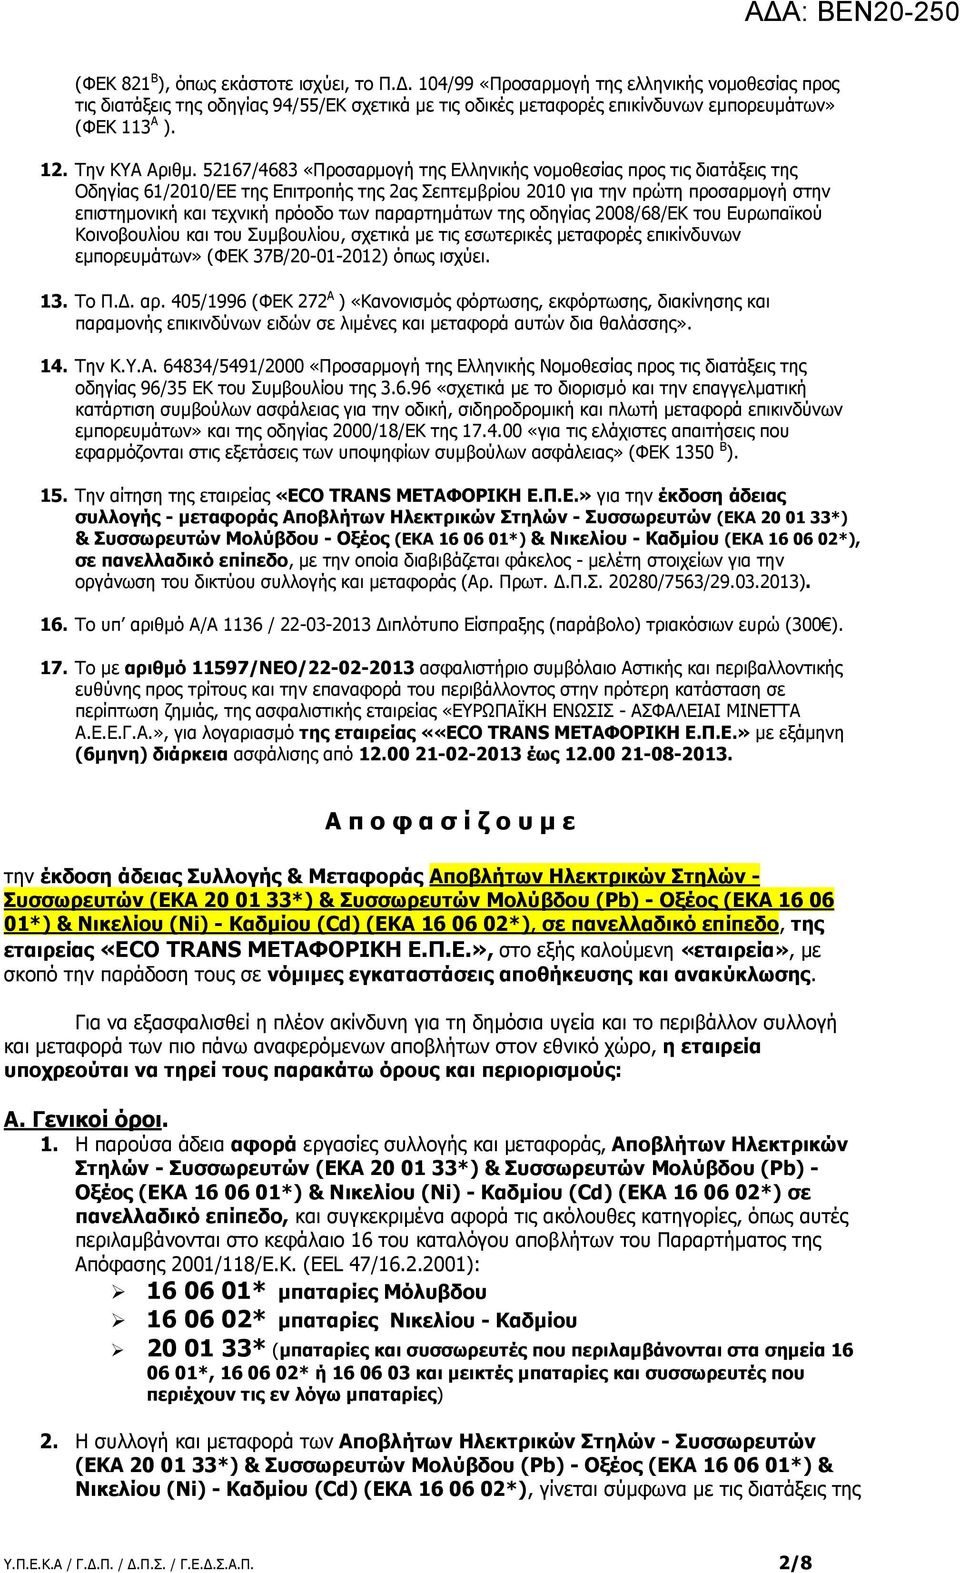 52167/4683 «Προσαρµογή της Ελληνικής νοµοθεσίας προς τις διατάξεις της Οδηγίας 61/2010/ΕΕ της Επιτροπής της 2ας Σεπτεµβρίου 2010 για την πρώτη προσαρµογή στην επιστηµονική και τεχνική πρόοδο των